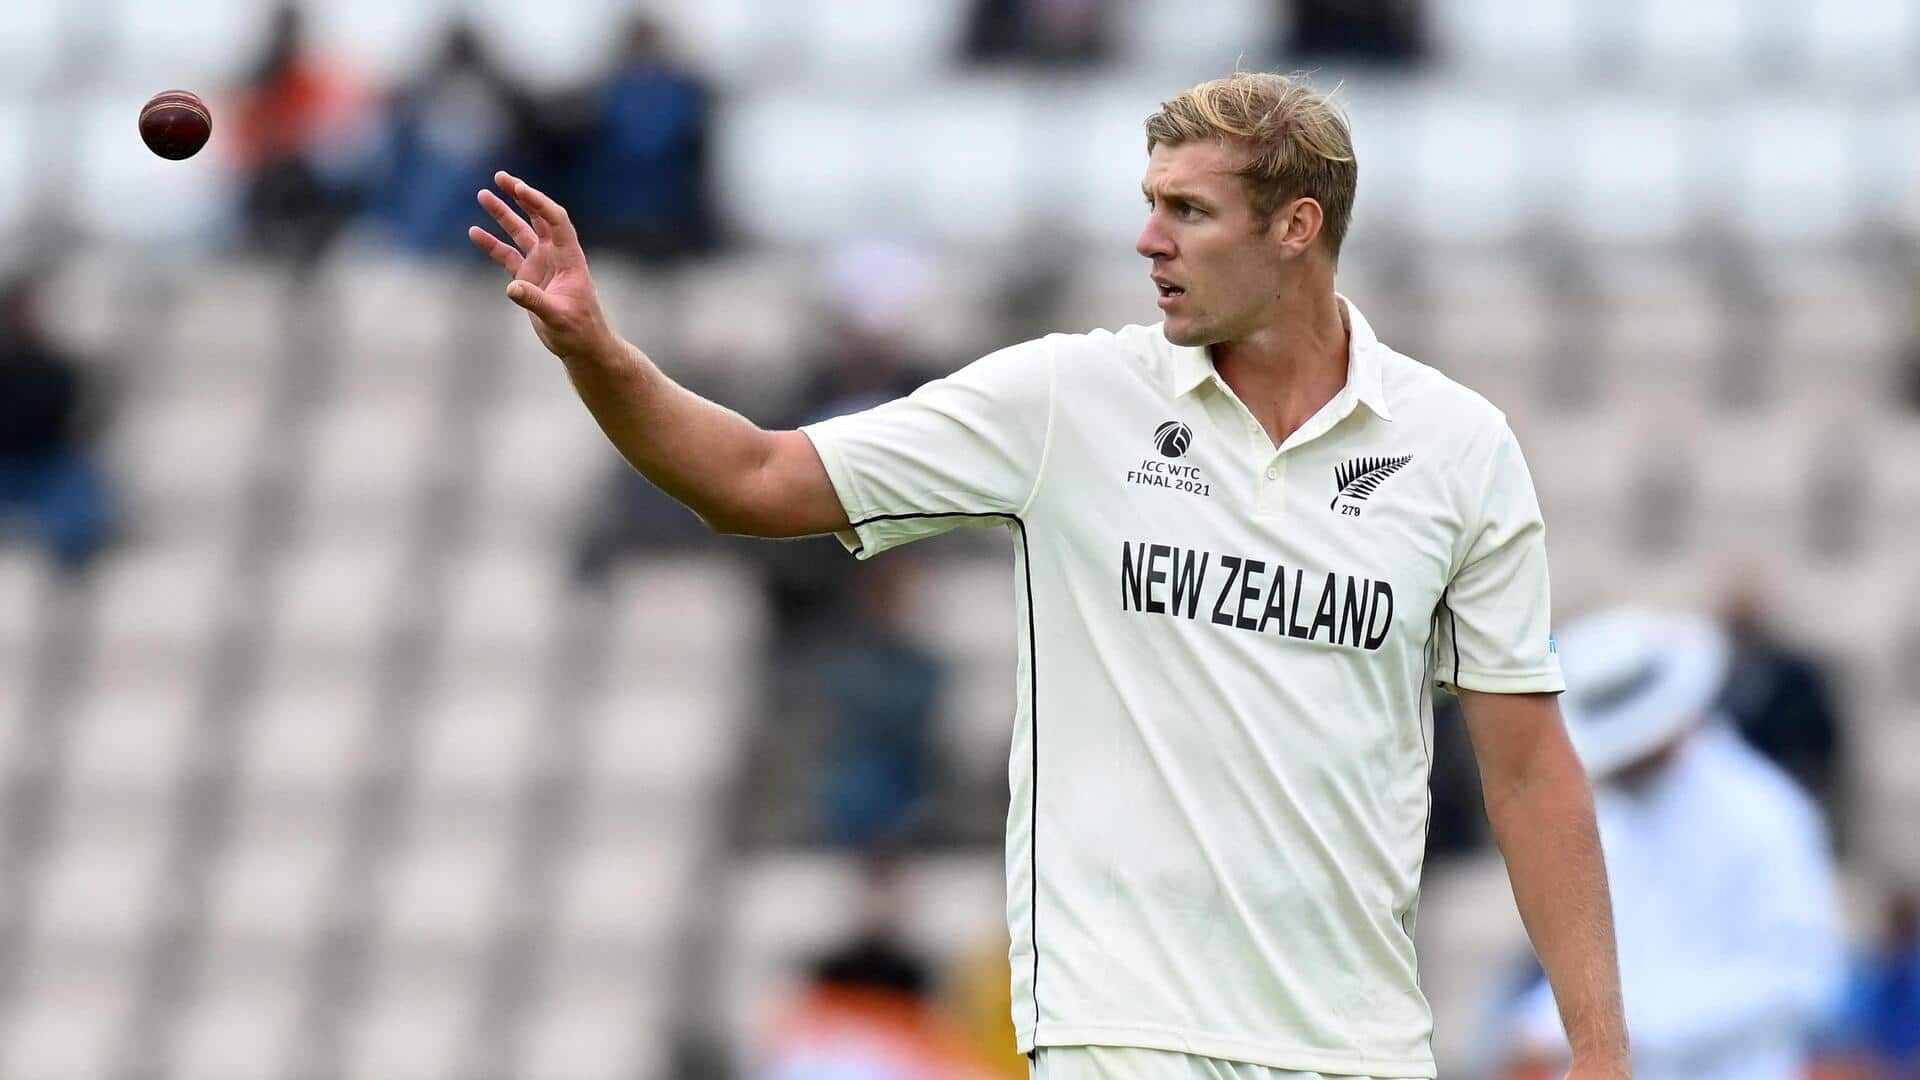 न्यूजीलैंड के काइल जैमीसन लगभग 1 साल रहेंगे क्रिकेट से दूर, पीठ की चोट बनी समस्या